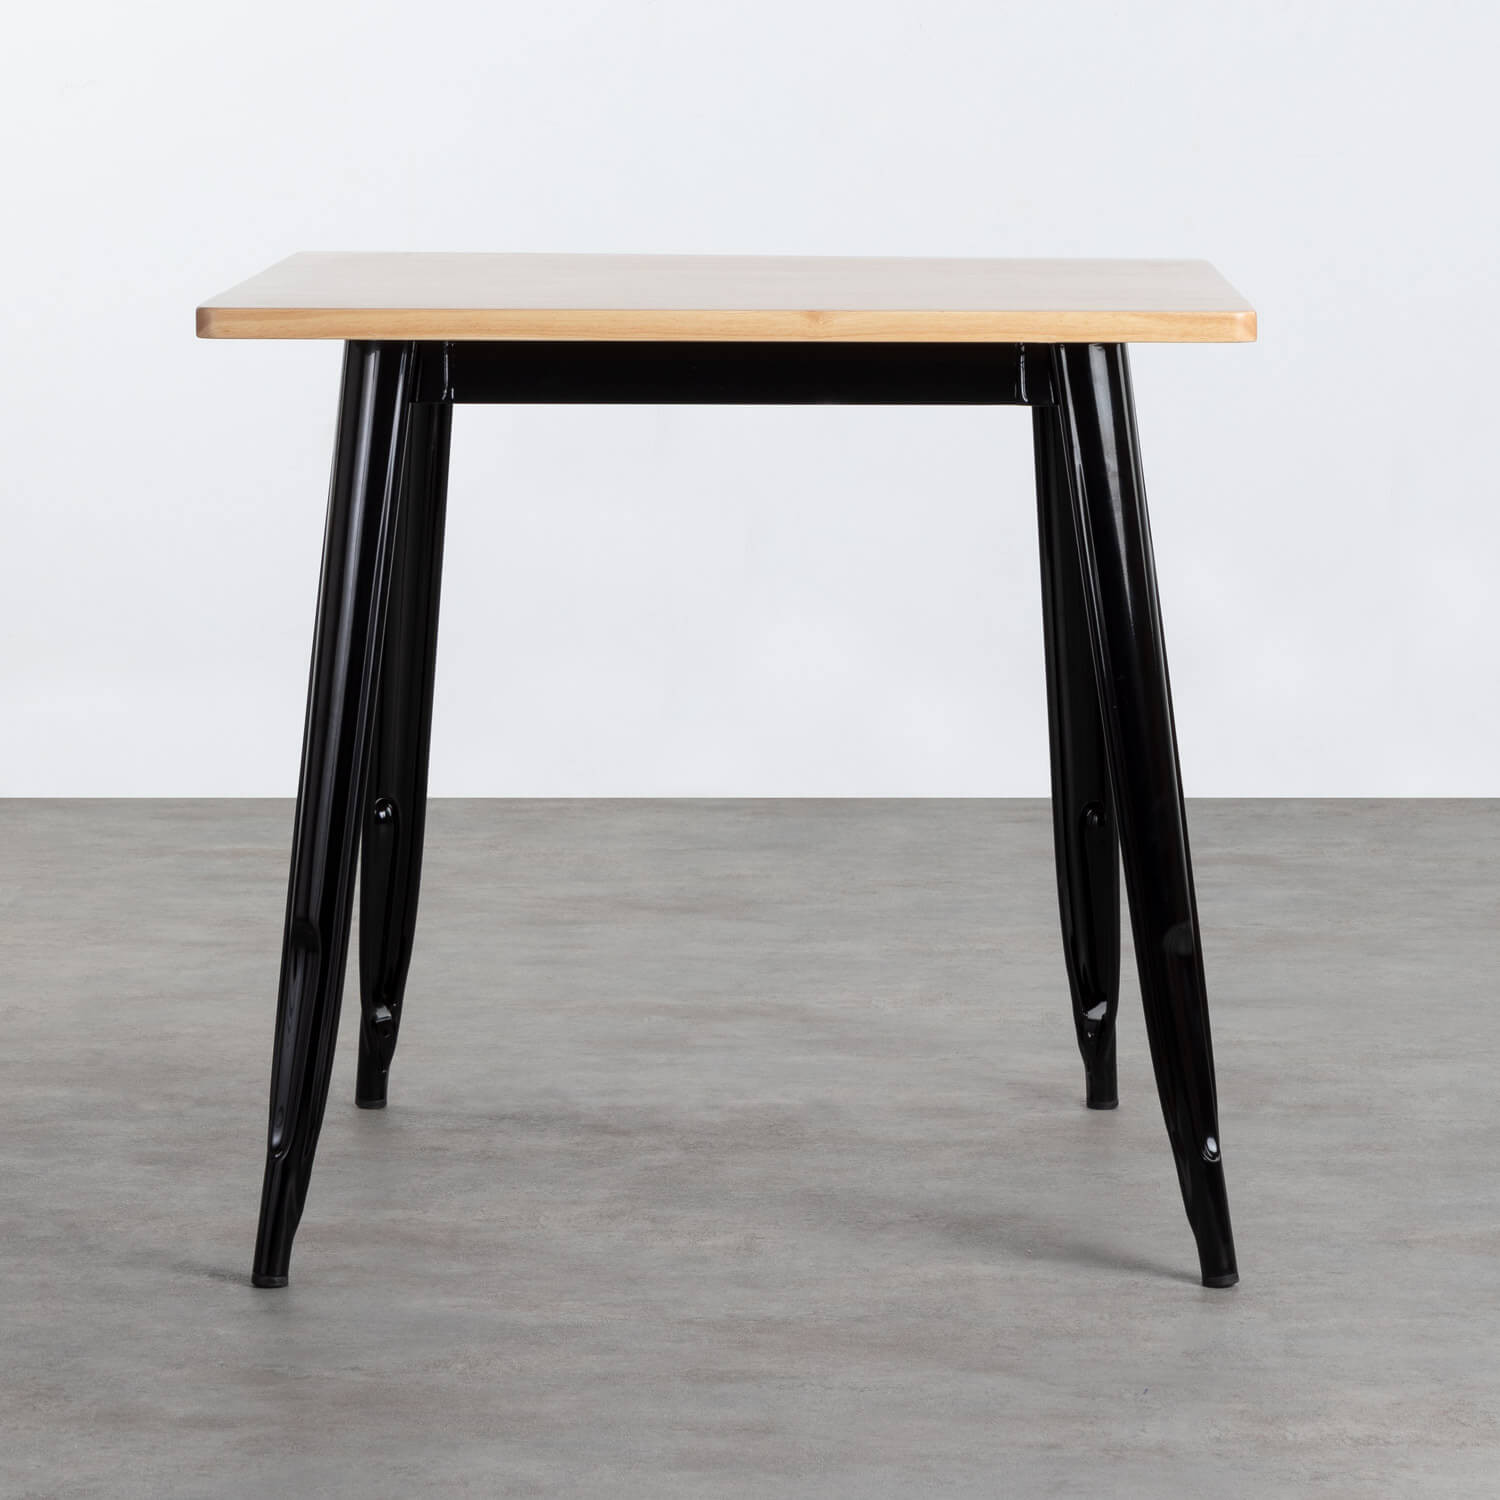 Tavolo da Pranzo Quadrato in Legno e Acciaio (80x80 cm) Industrial Fino, immagine della galleria 2